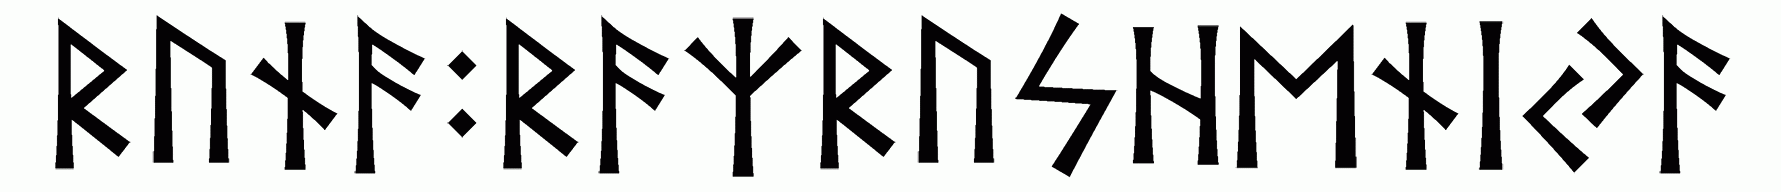 runa+razrusheniya - Напиши имя  РУНА+РАЗРУШЕНИЯ рунами  - ᚱᚢᚾᚨ:ᚱᚨᛉᚱᚢᛋᚺᛖᚾᛁᛃᚨ - Значение и характер имени  РУНА+РАЗРУШЕНИЯ - 